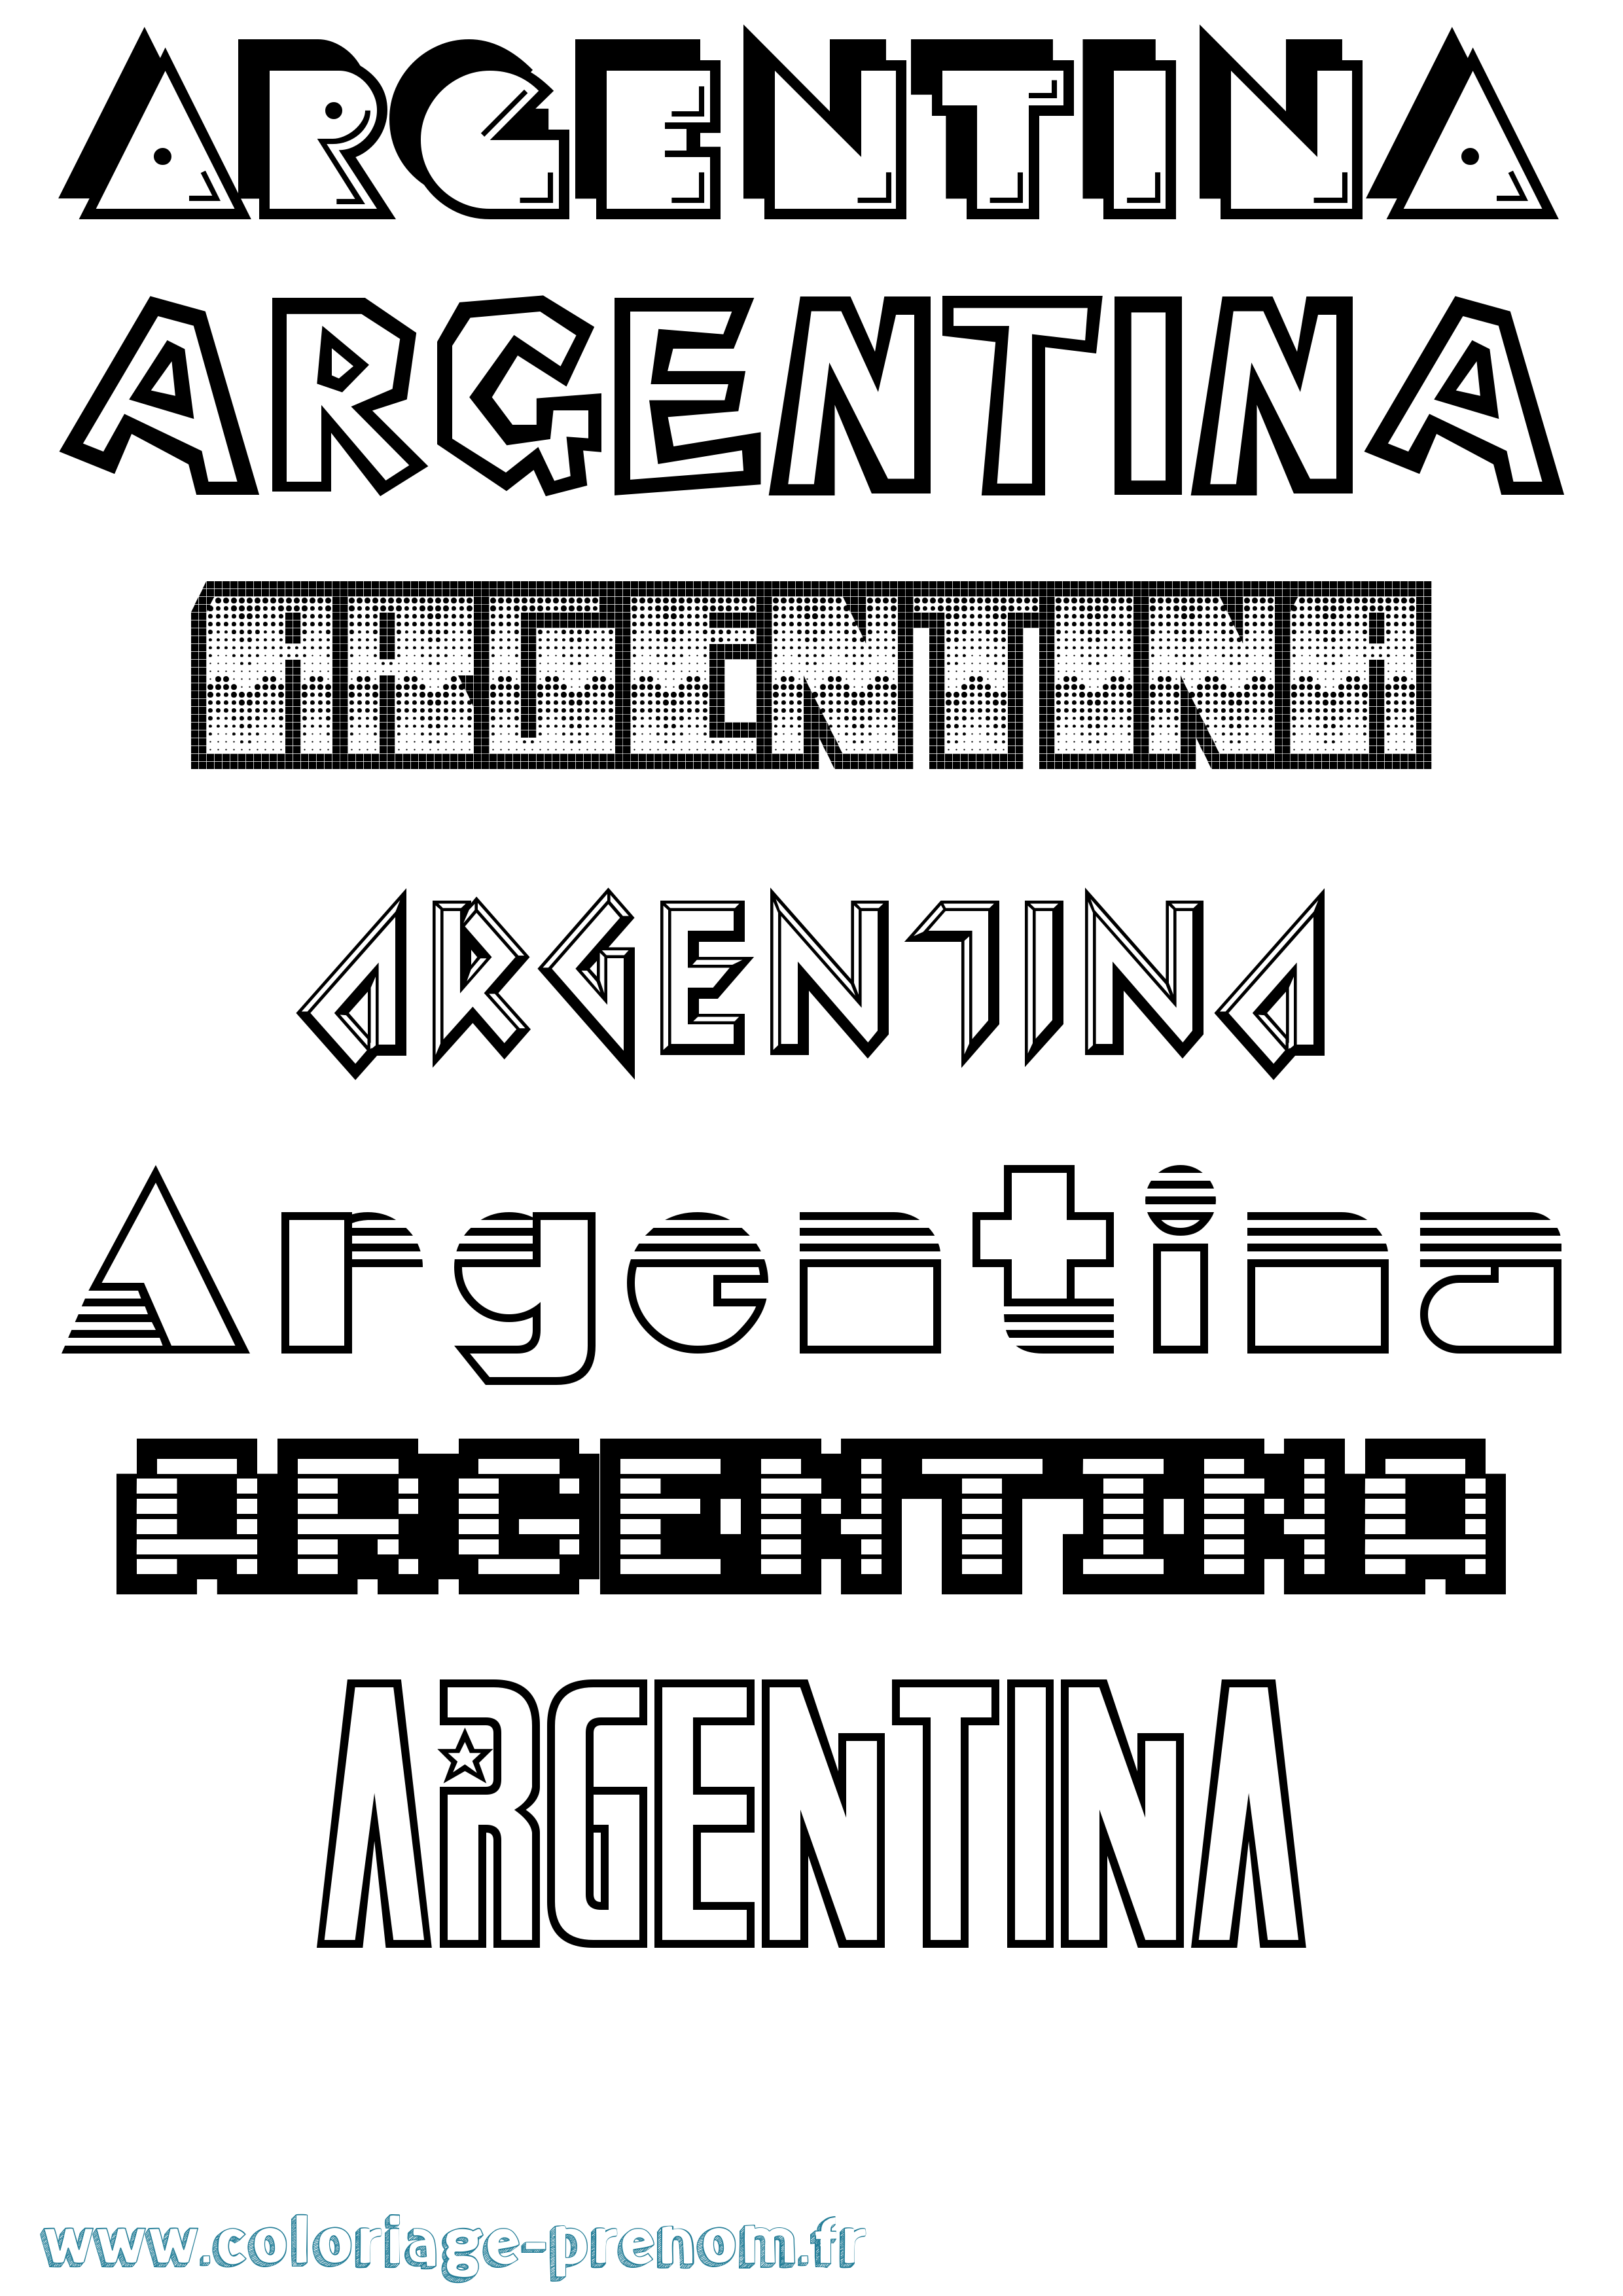 Coloriage prénom Argentina Jeux Vidéos